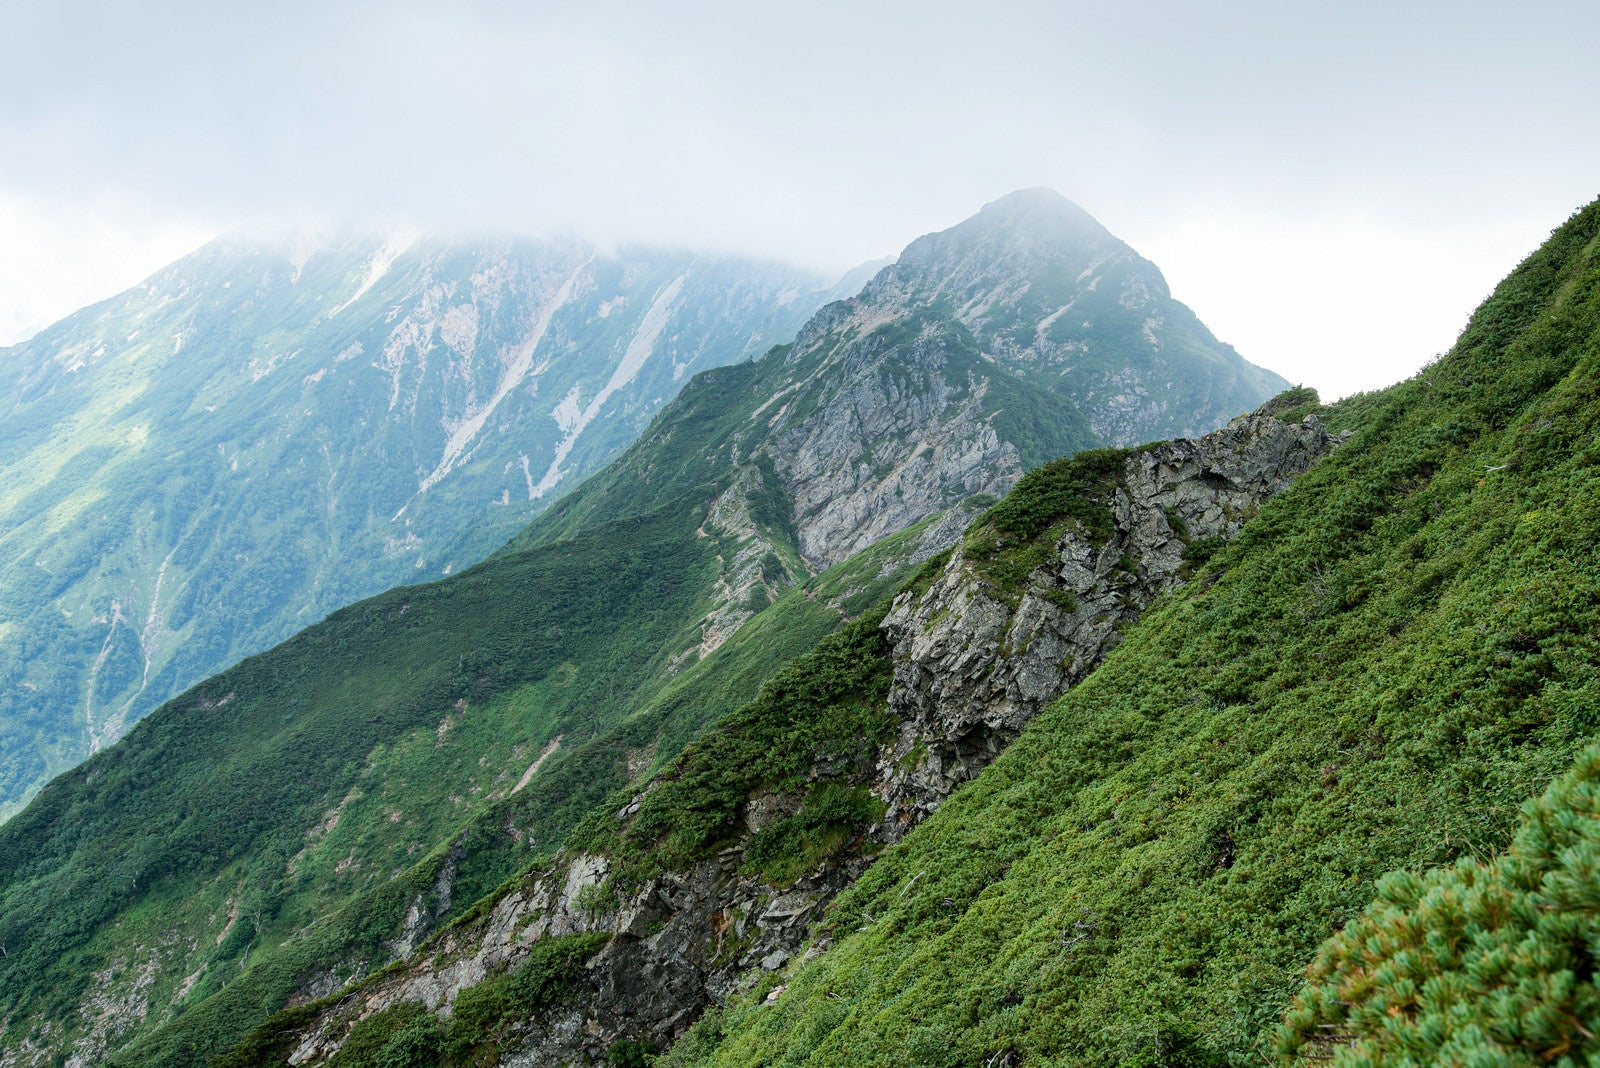 「雲で隠れた岩尾根と切り立つ山々」の写真